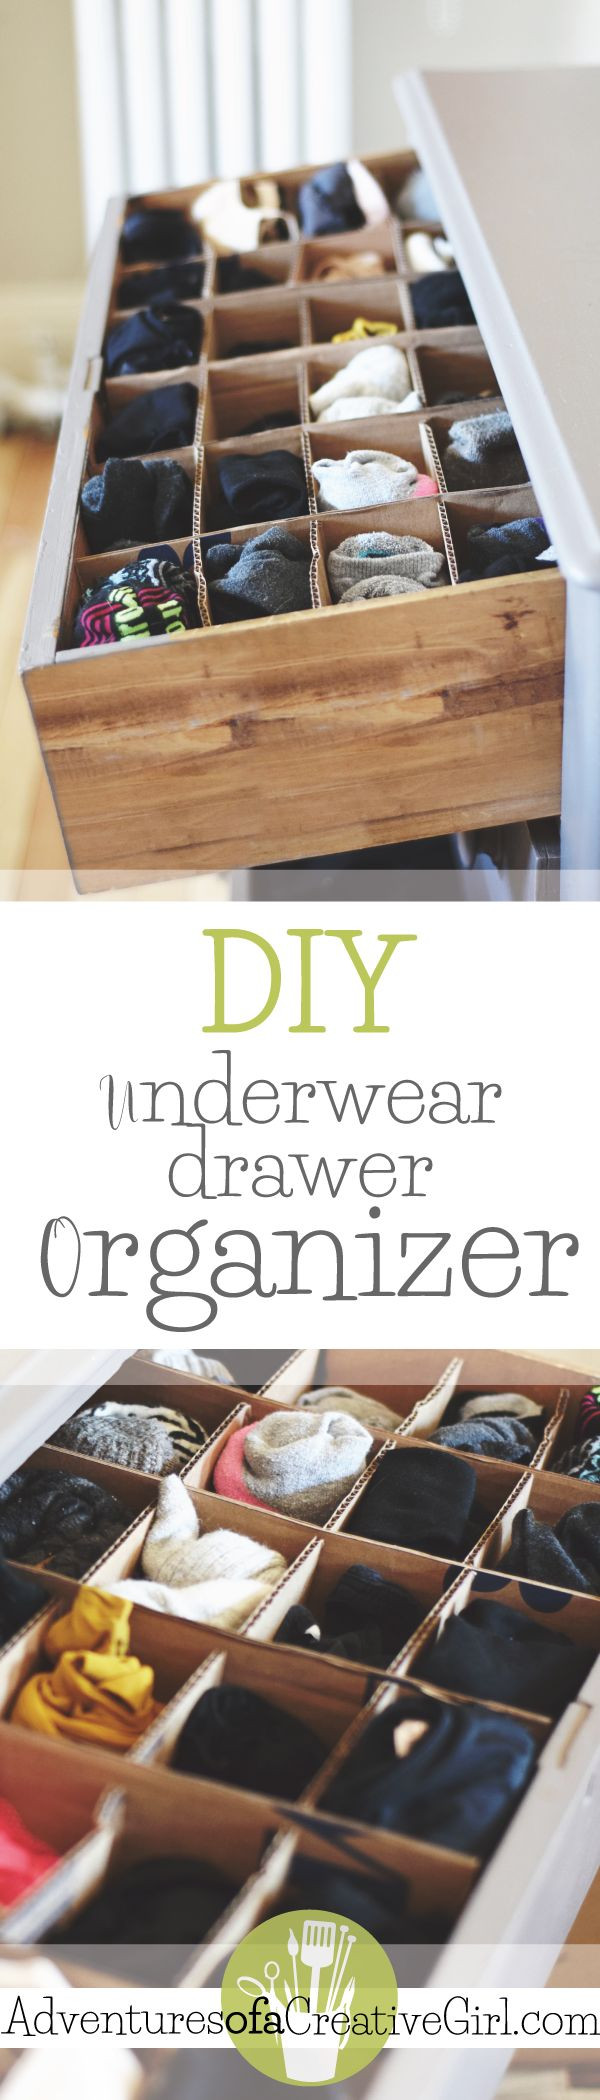 DIY Sock Drawer Organizer
 Underwear Drawer Organizer DIY